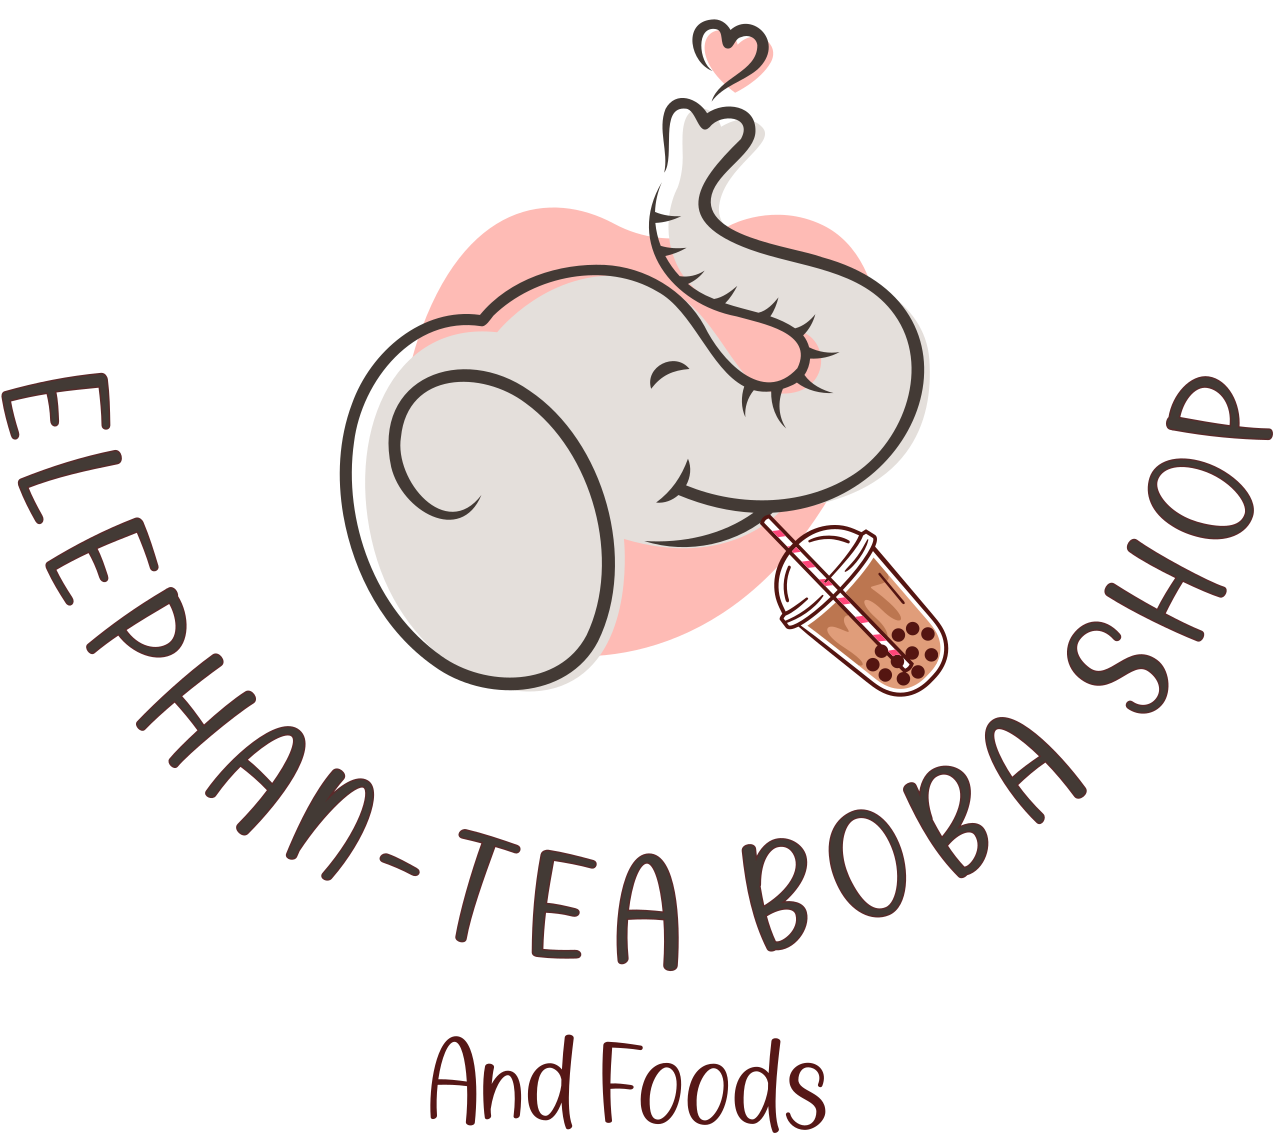 ELEPHAN-TEA BOBA SHOP's web page